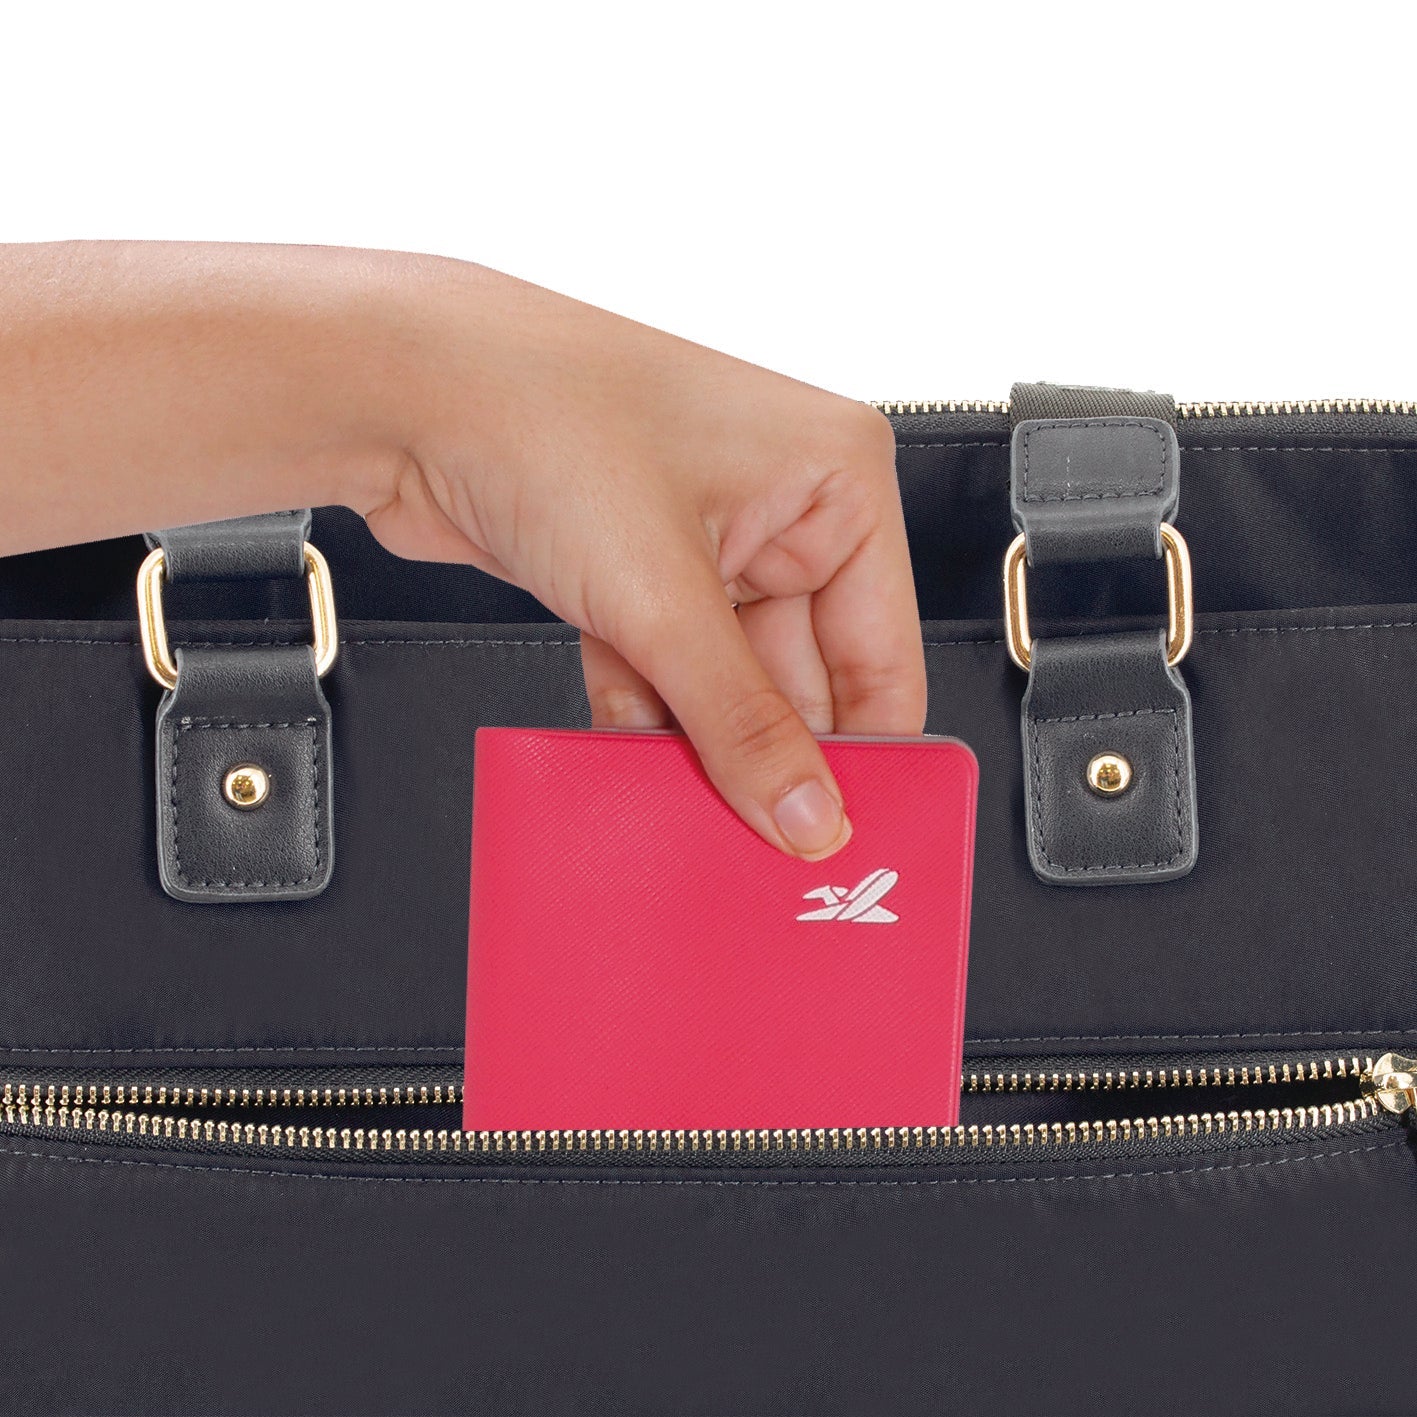 תיק יד אלגנטי הכולל רצועת הלבשה על מזוודת טרולי מבית המותג השוויצרי SwissBrand  דגם Granada Handbag